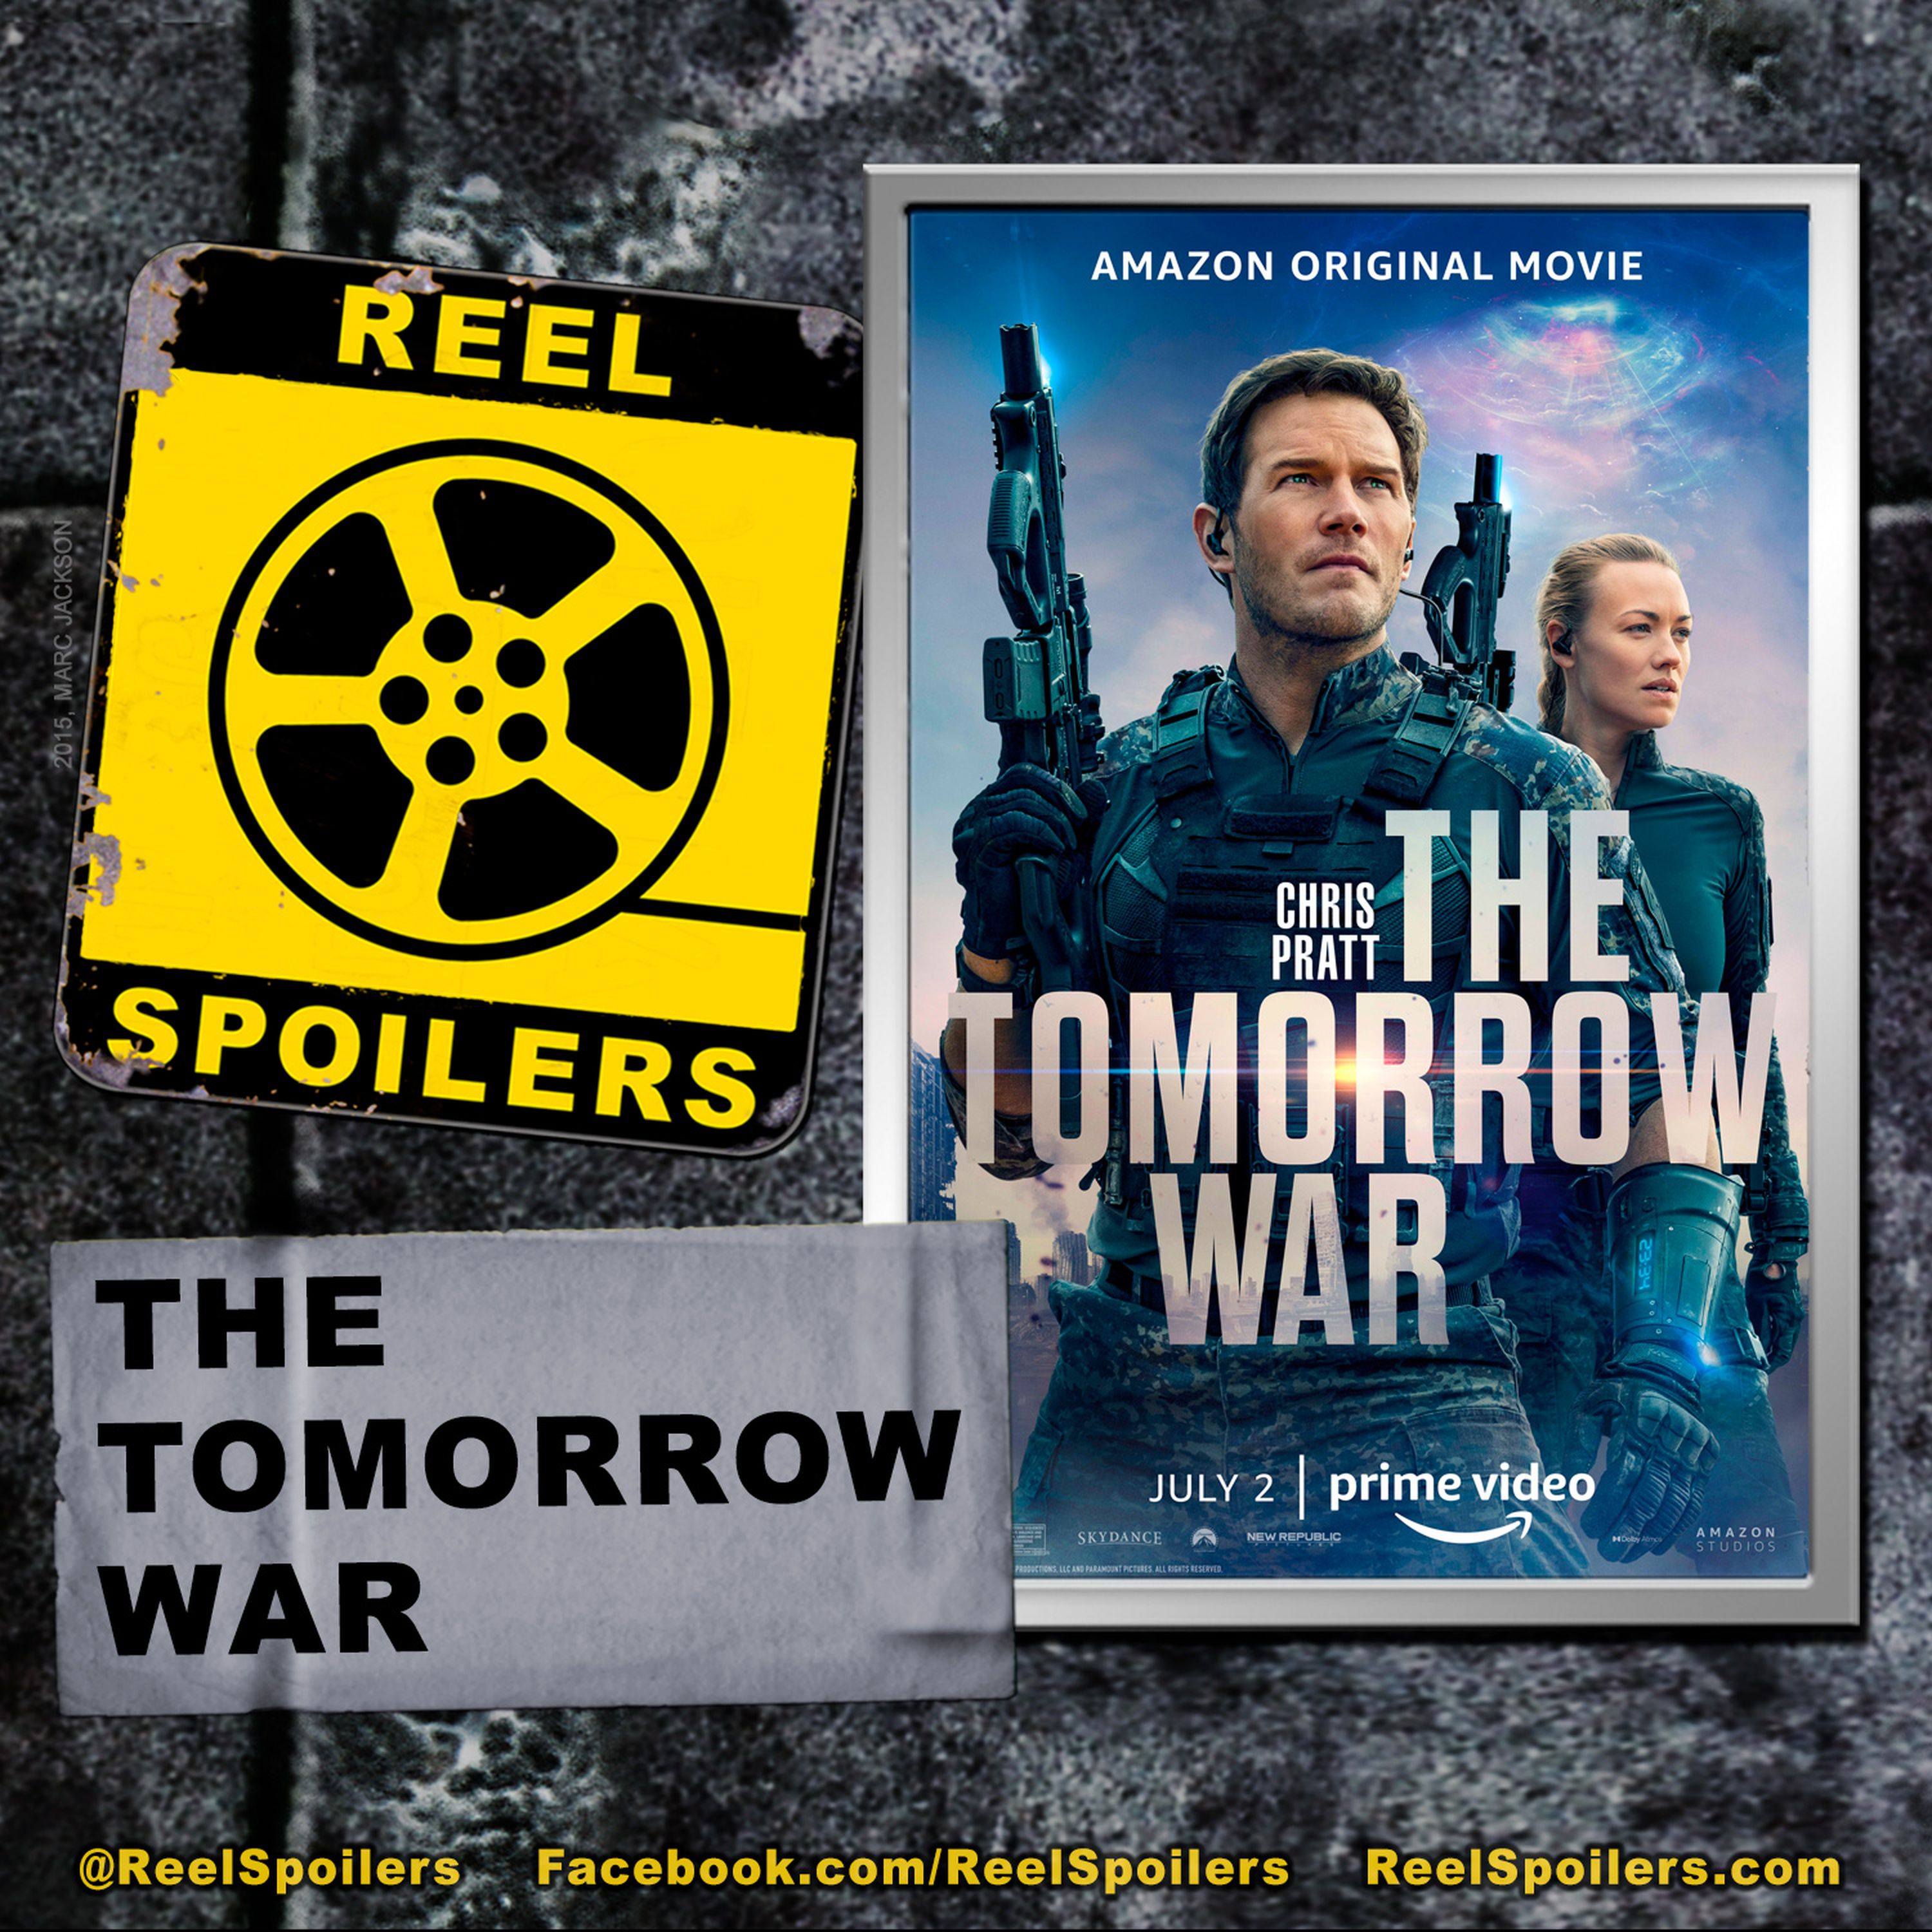 THE TOMORROW WAR Starring Chris Pratt, Dan Forester, Yvonne Strahovski, J.K. Simmons Image